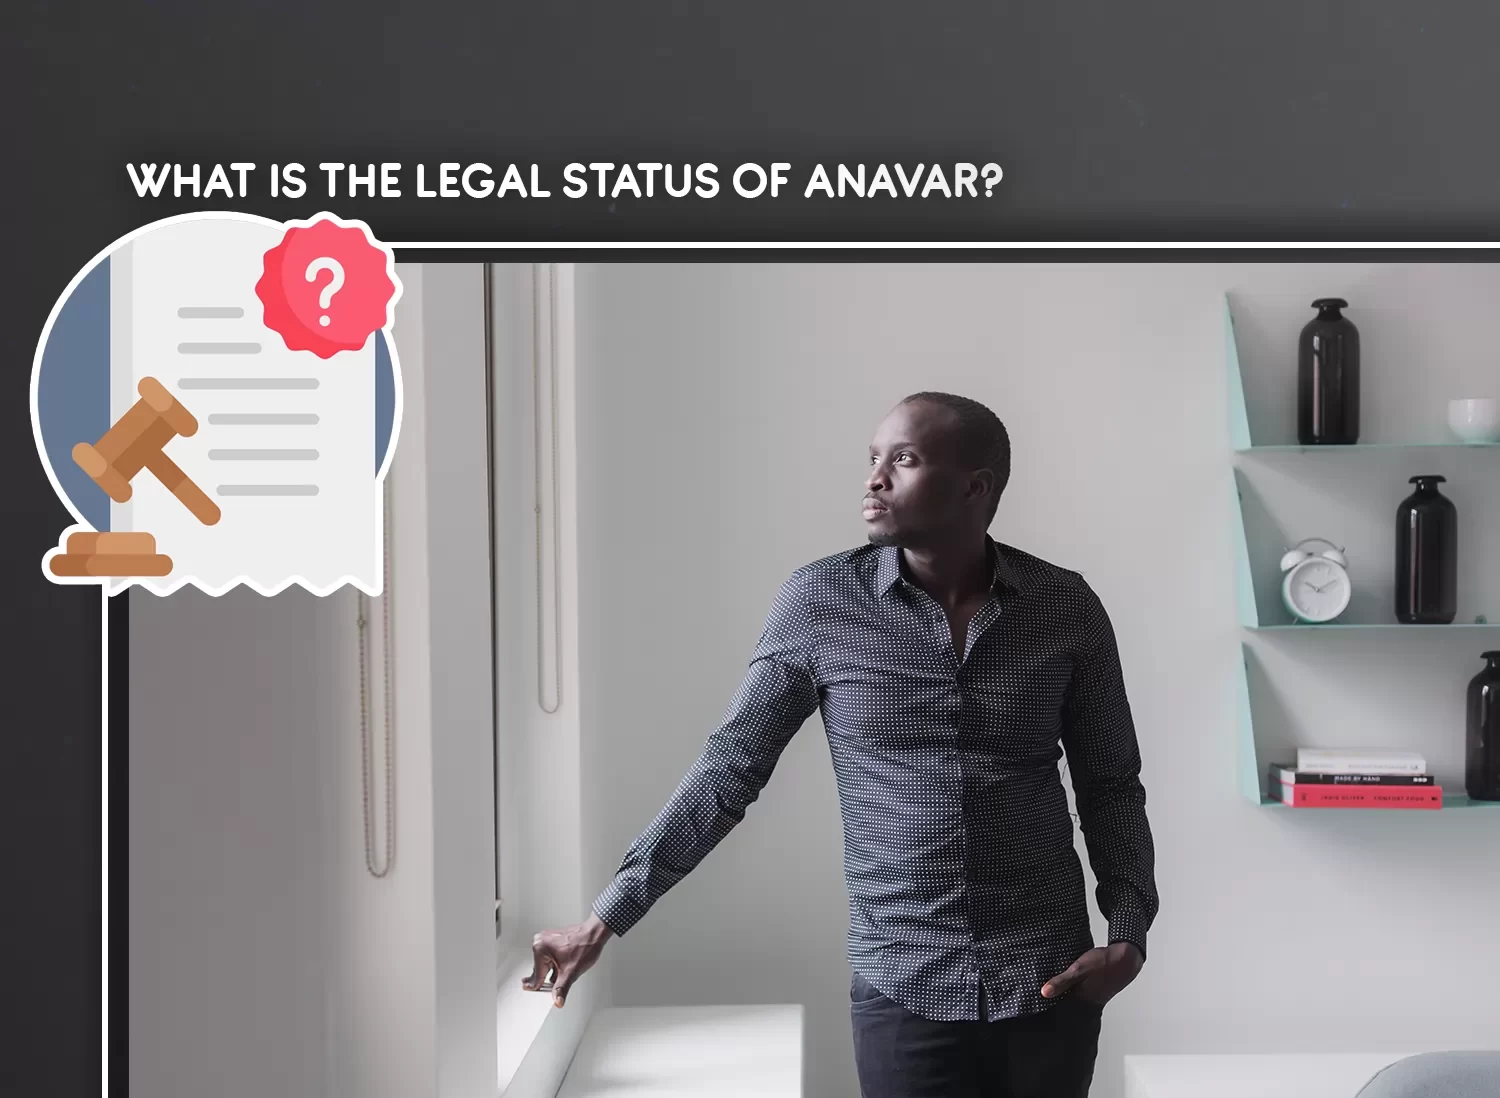 Legal status of Anavar